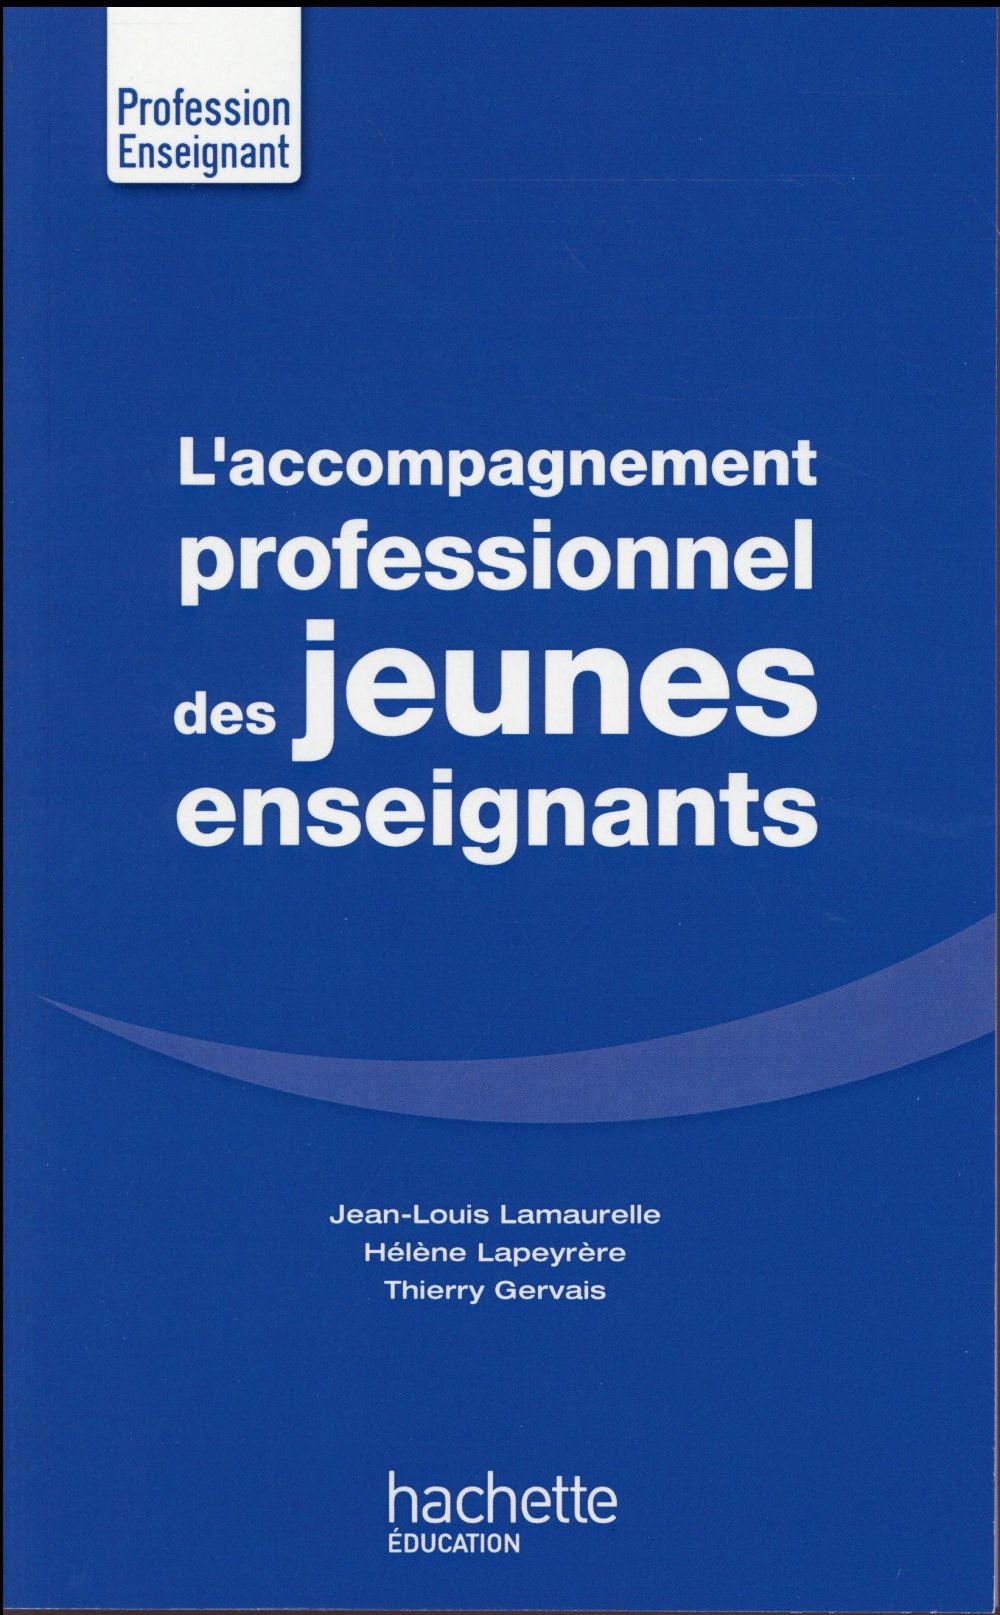 L'ACCOMPAGNEMENT PROFESSIONNEL DES JEUNES ENSEIGNANTS